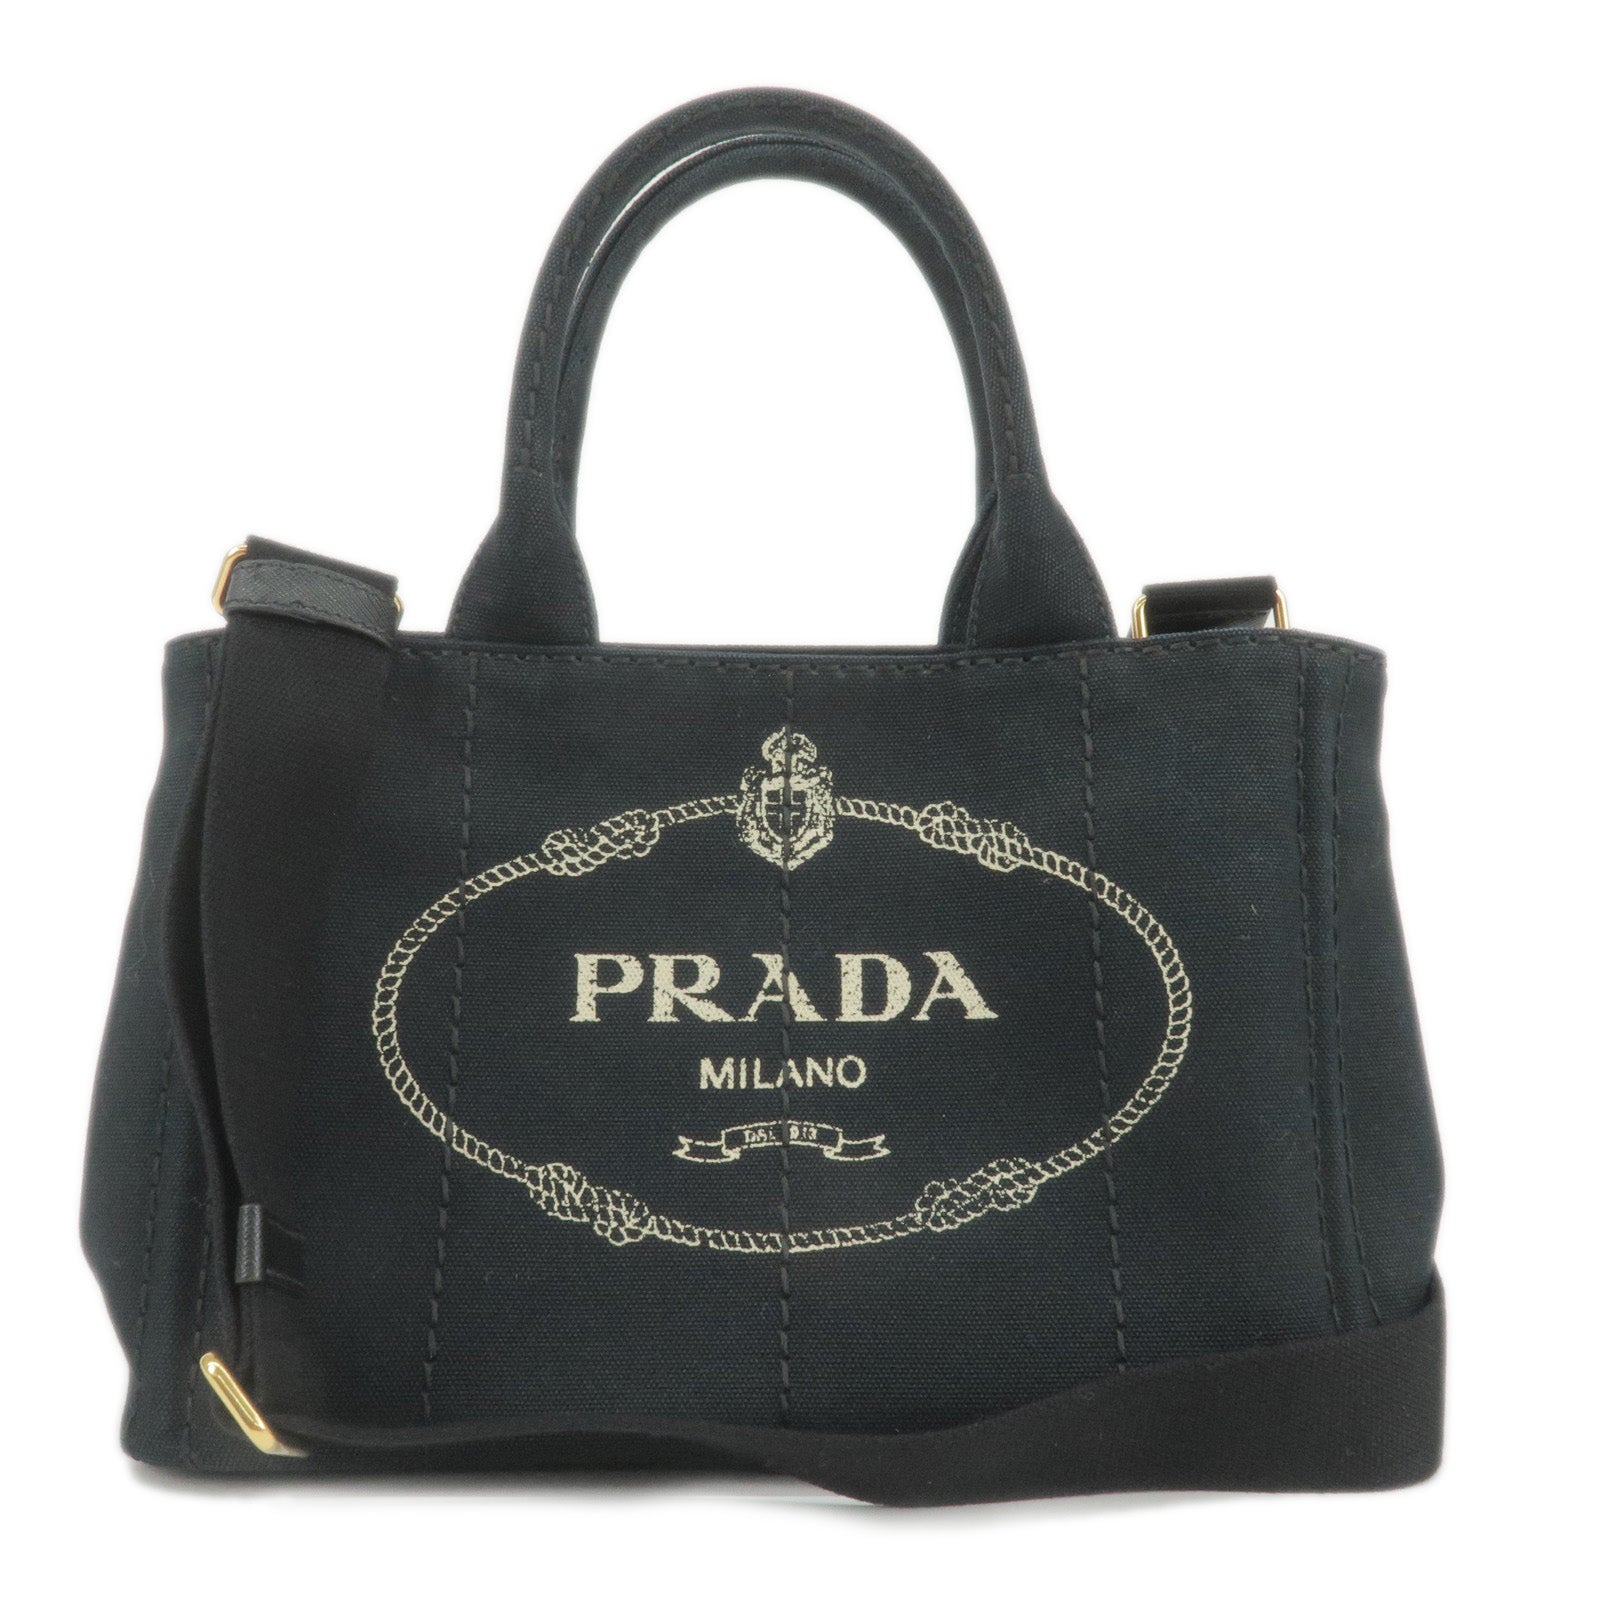 Prada Monochrome Mini Shoulder Bag in Black